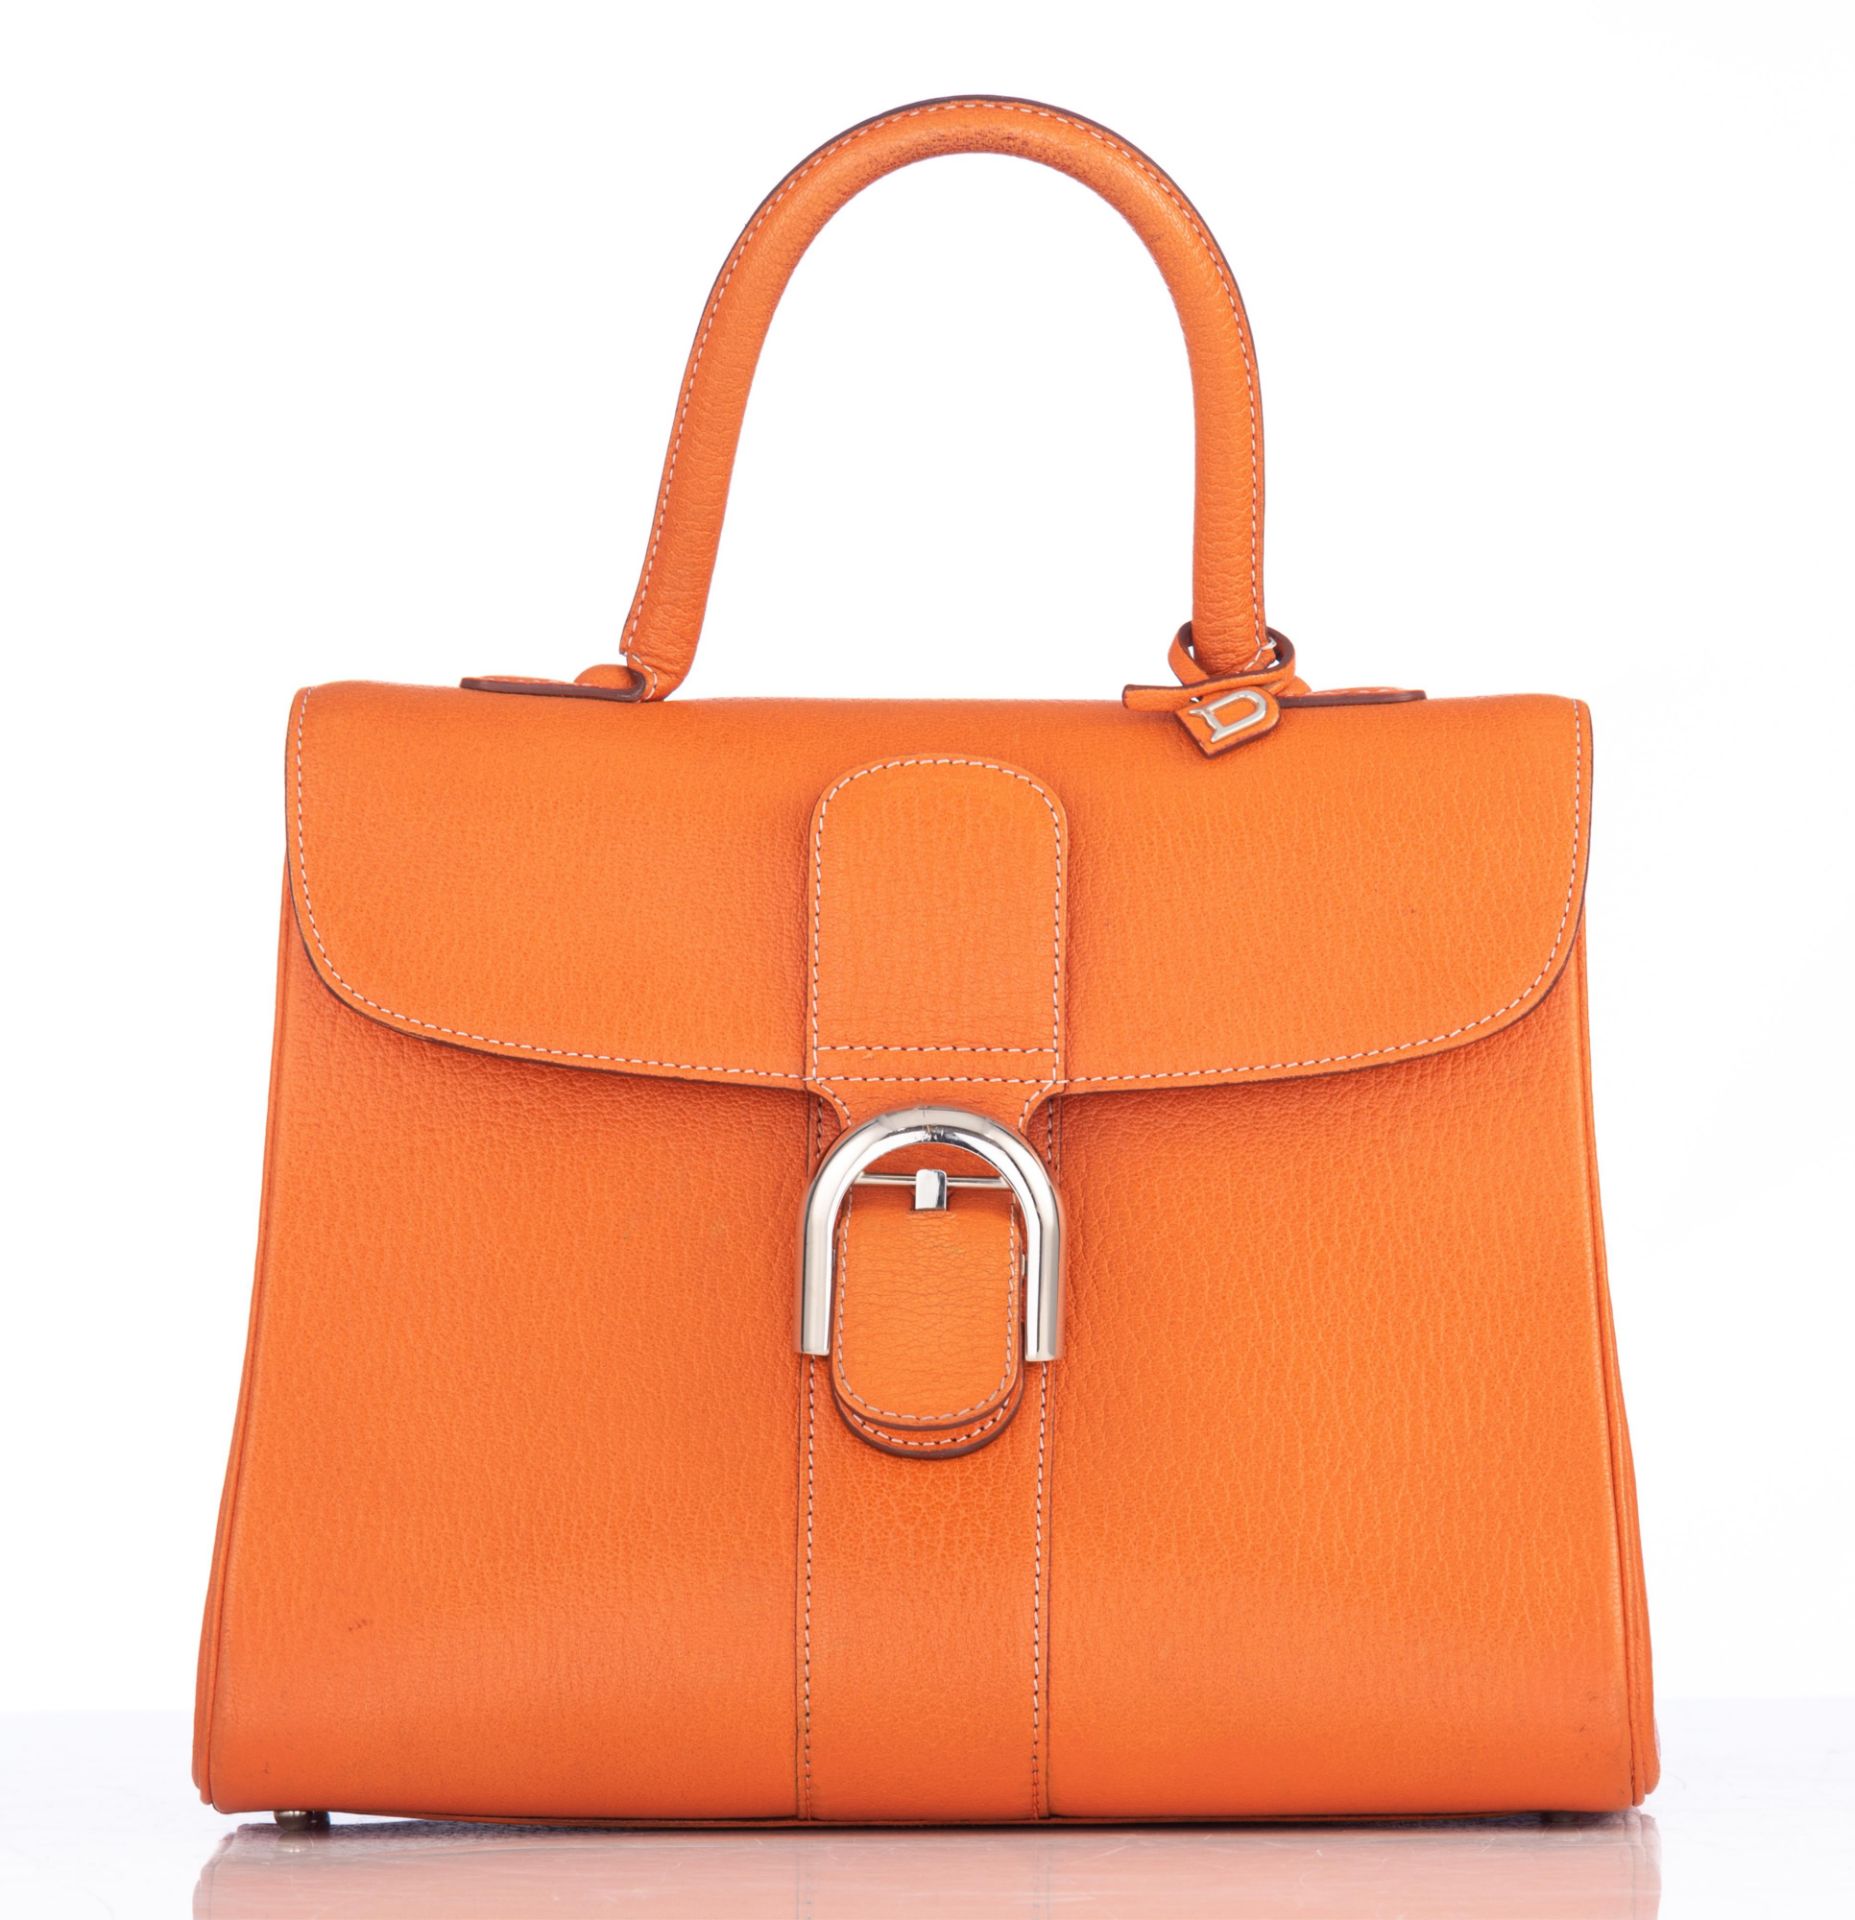 An orange leather Delvaux Brillant MM handbag, H 22 - W 29 cm - D 14,5 cm - Image 3 of 17